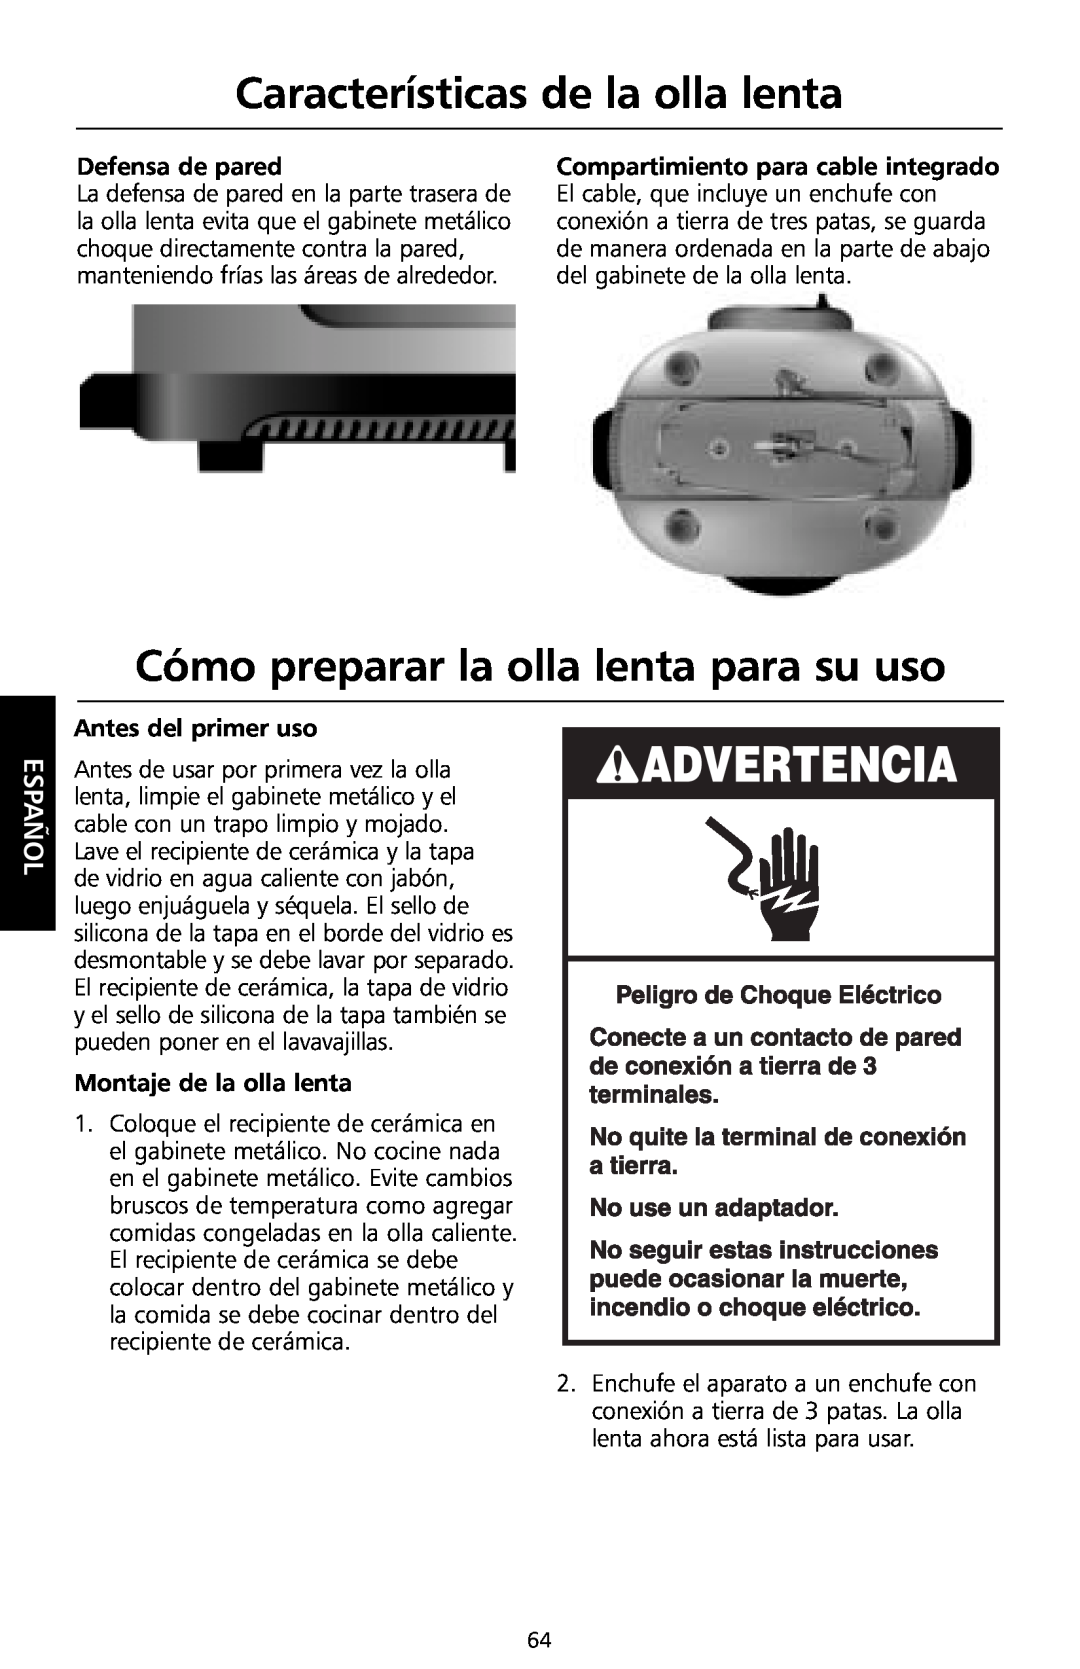 KitchenAid KSC700 Cómo preparar la olla lenta para su uso, Defensa de pared, Compartimiento para cable integrado, Español 